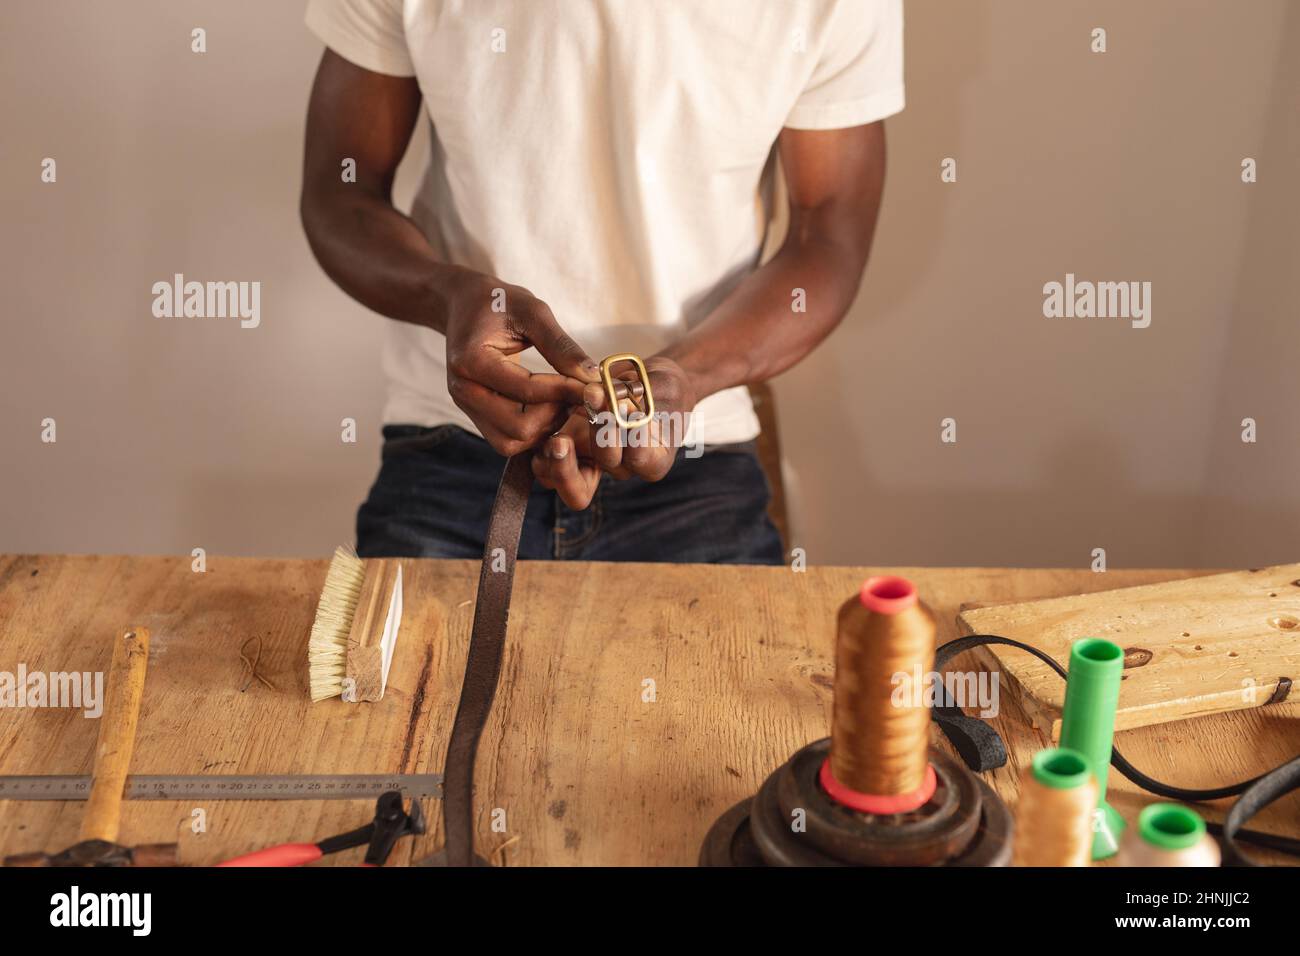 Mittelteil des afroamerikanischen jungen männlichen Handwerkers, der Schnalle auf Ledergürtel in der Werkstatt fixiert Stockfoto